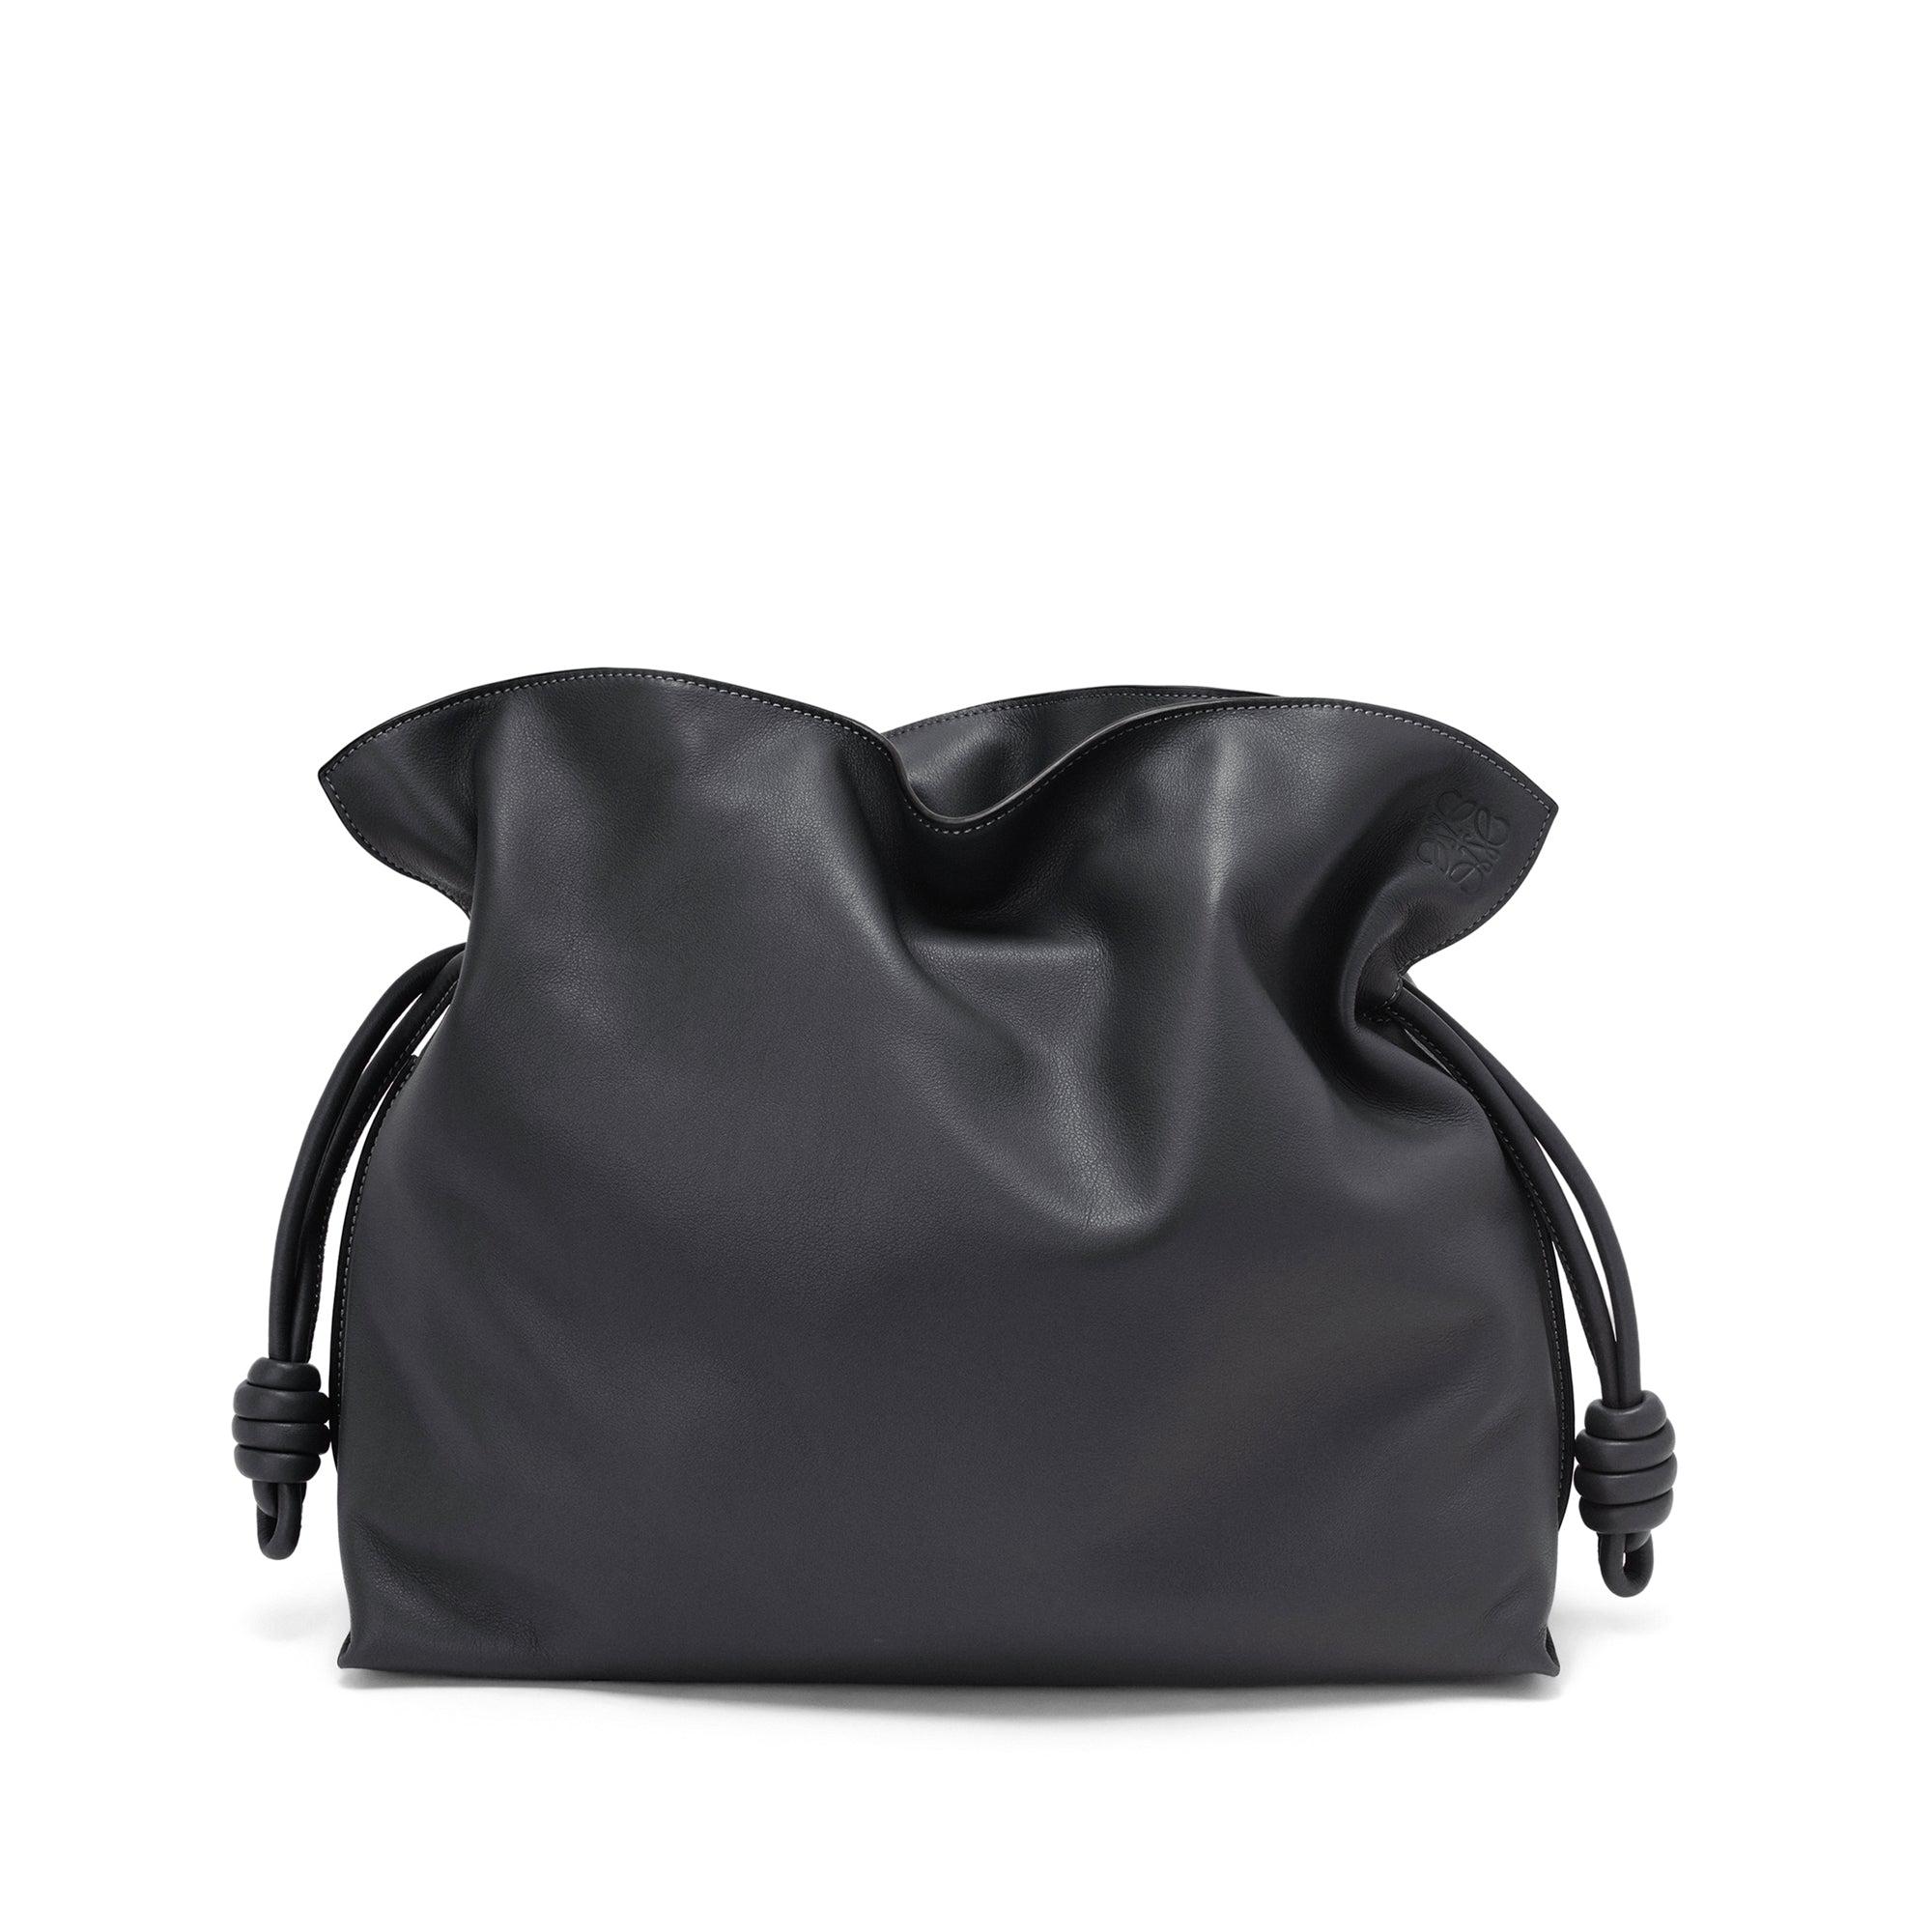 Loewe Women's Flamenco Clutch Large Bag (Black) by LOEWE